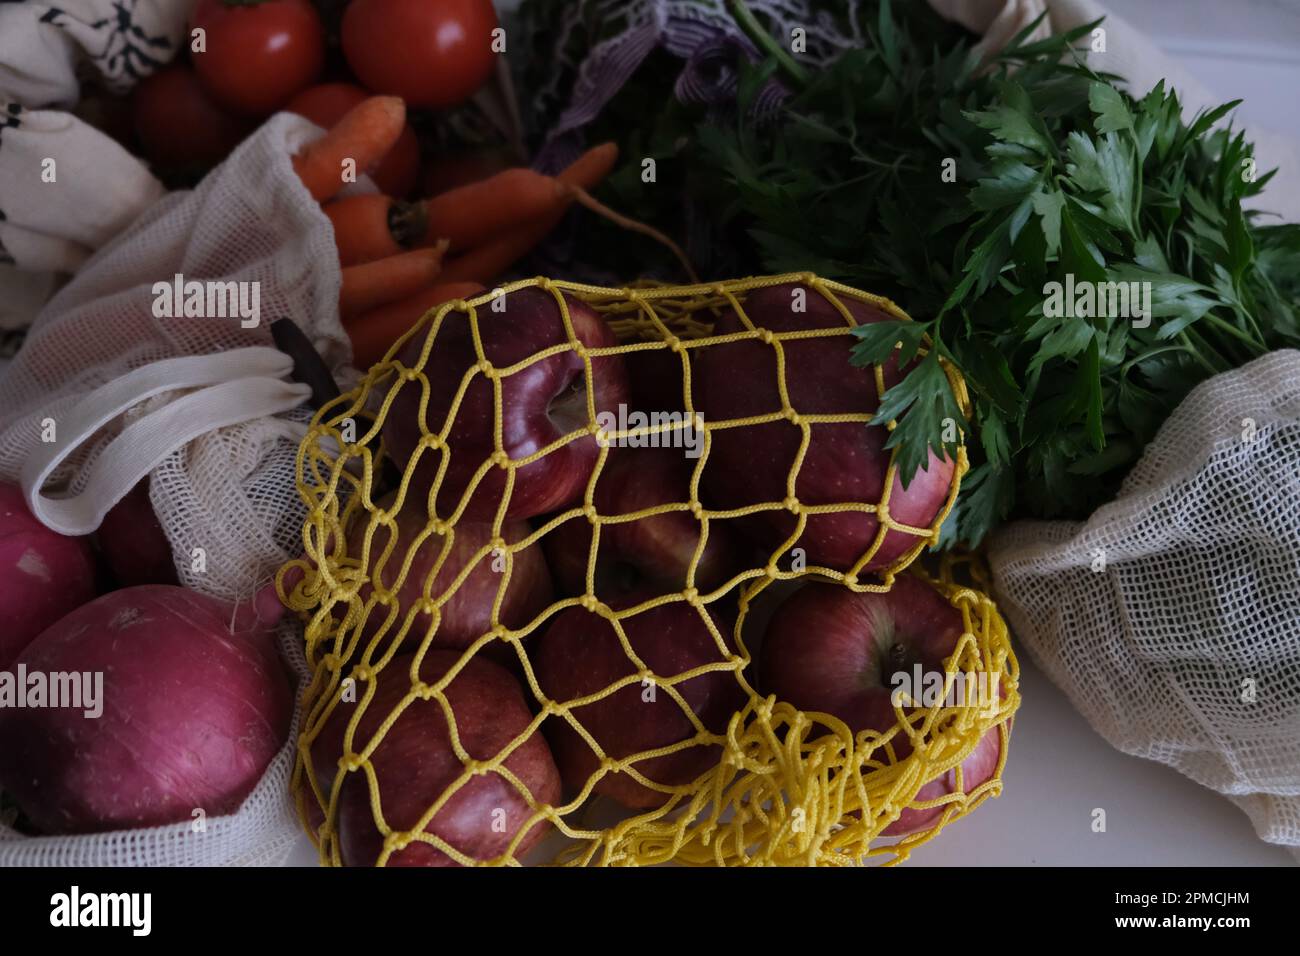 Lebensmittel gesundes Einkaufen, Gemüse, Obst und Gemüse in einer umweltfreundlichen Tasche auf Küchenarbeitsplatte. Stockfoto